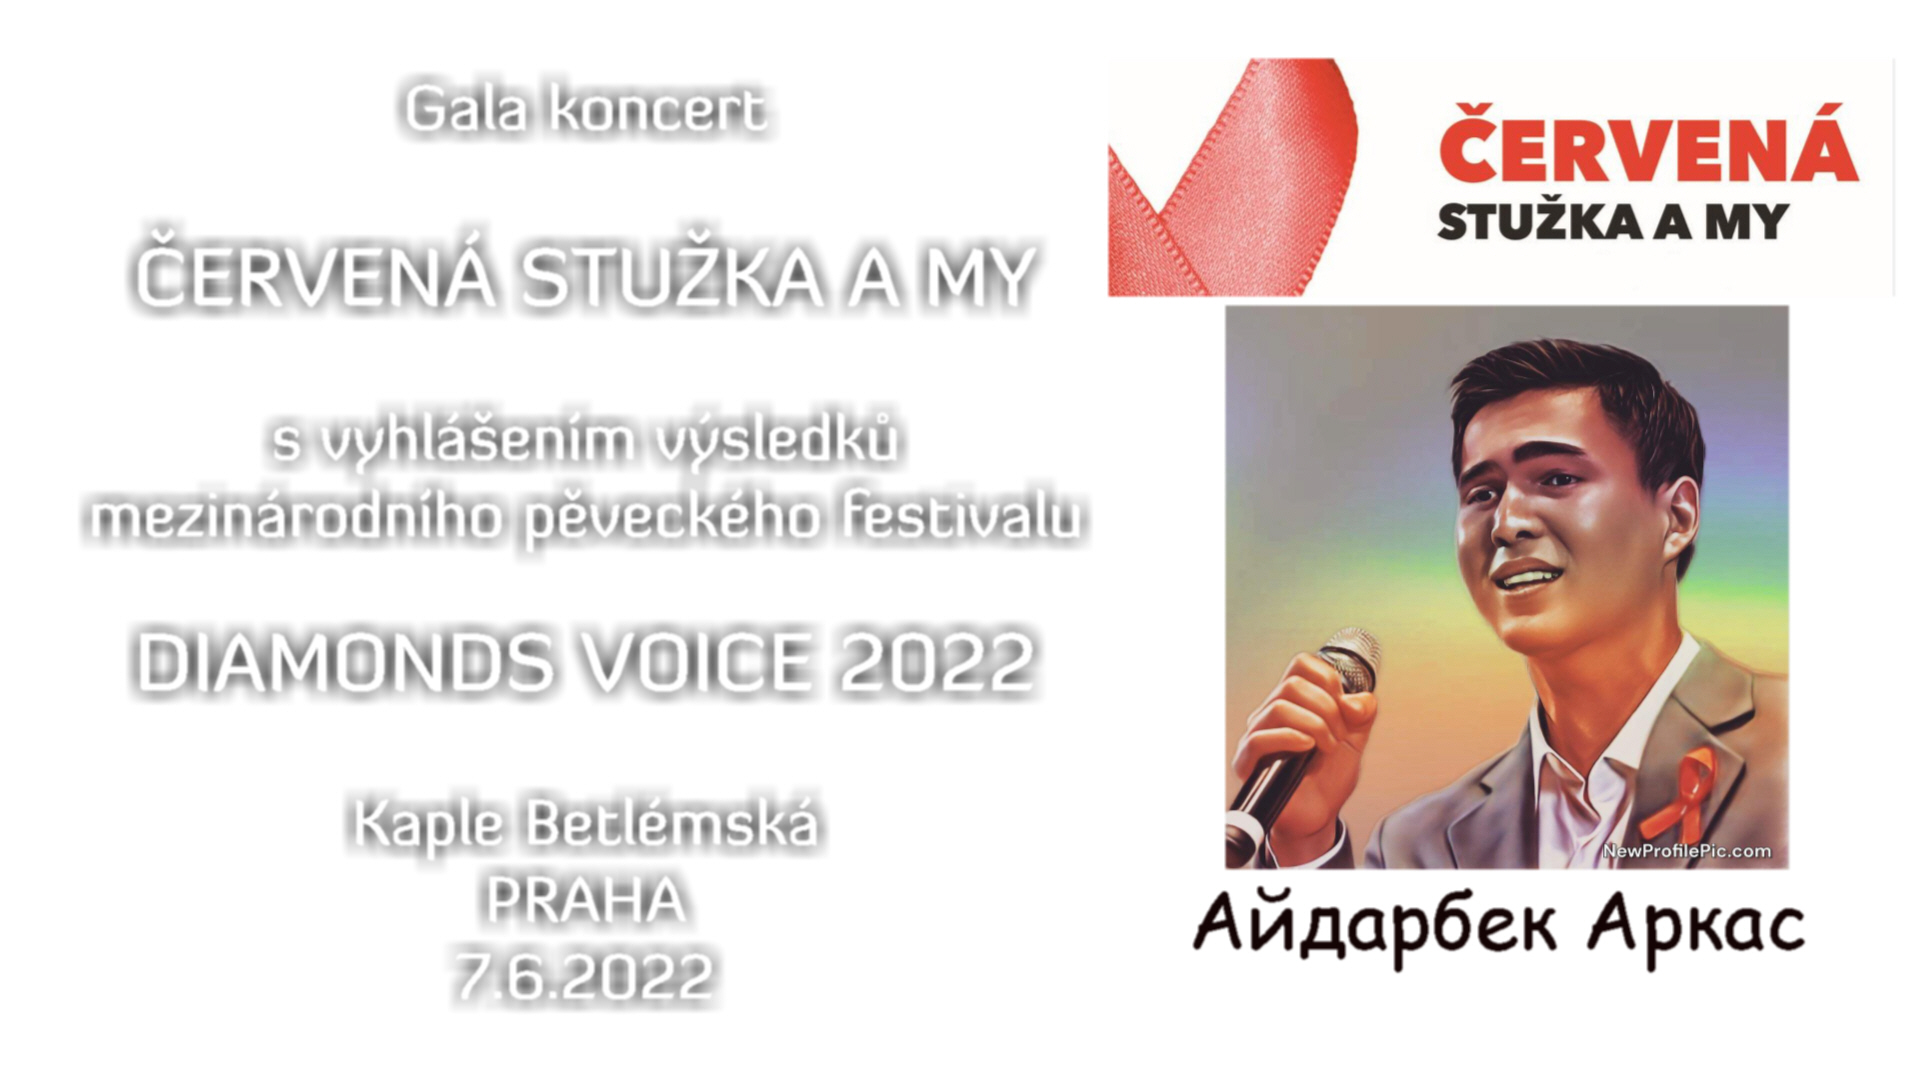 Voices 2022